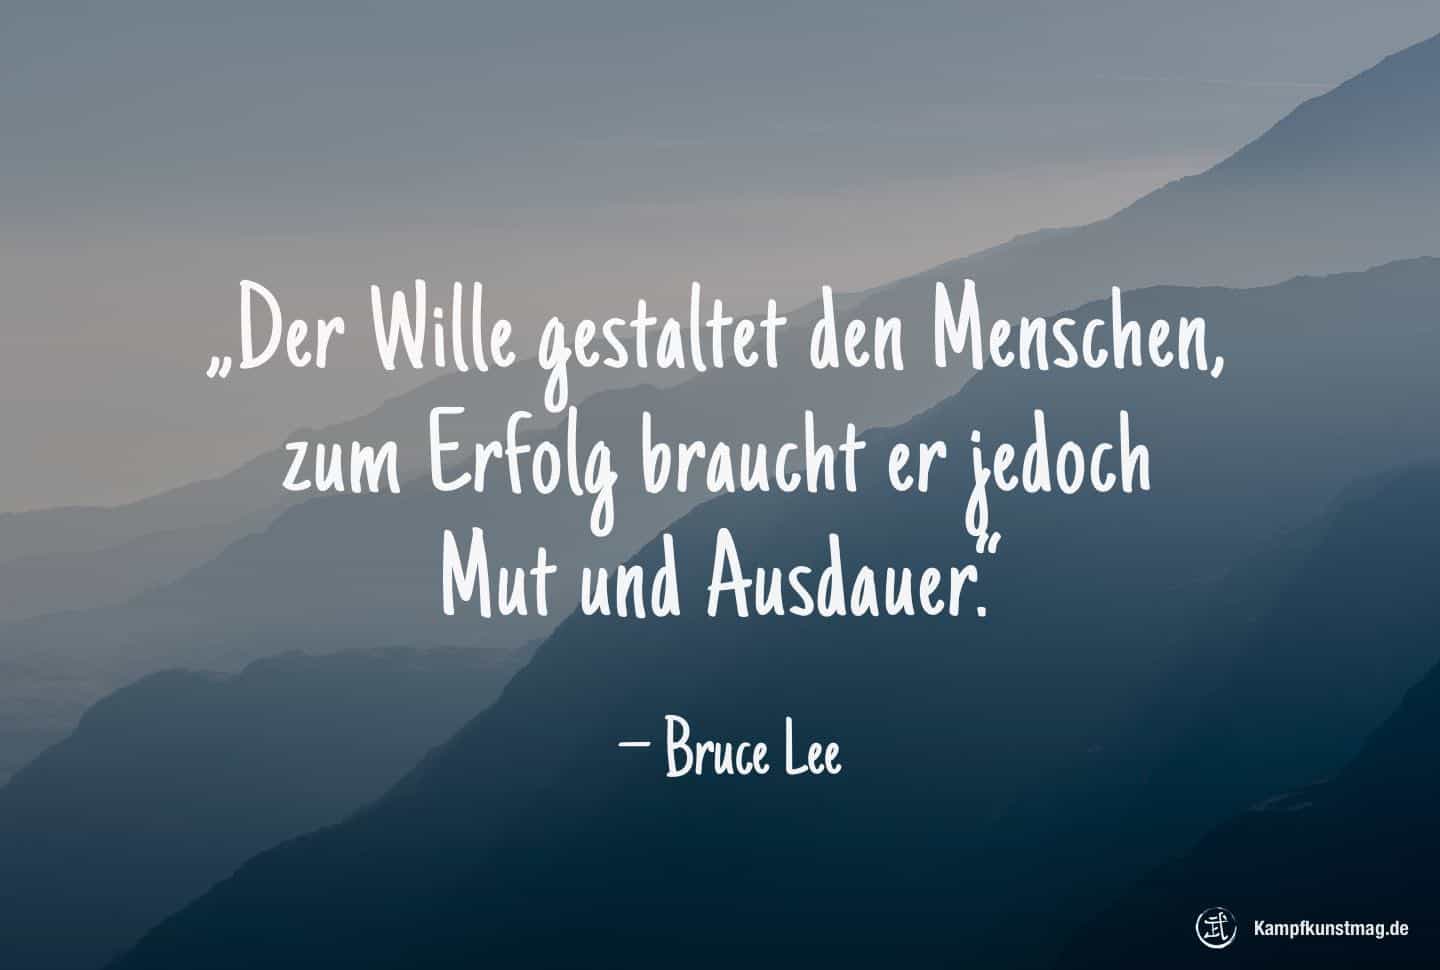 Der Wille gestaltet den Menschen, zum Erfolg braucht er jedoch Mut und Ausdauer. – Bruce Lee